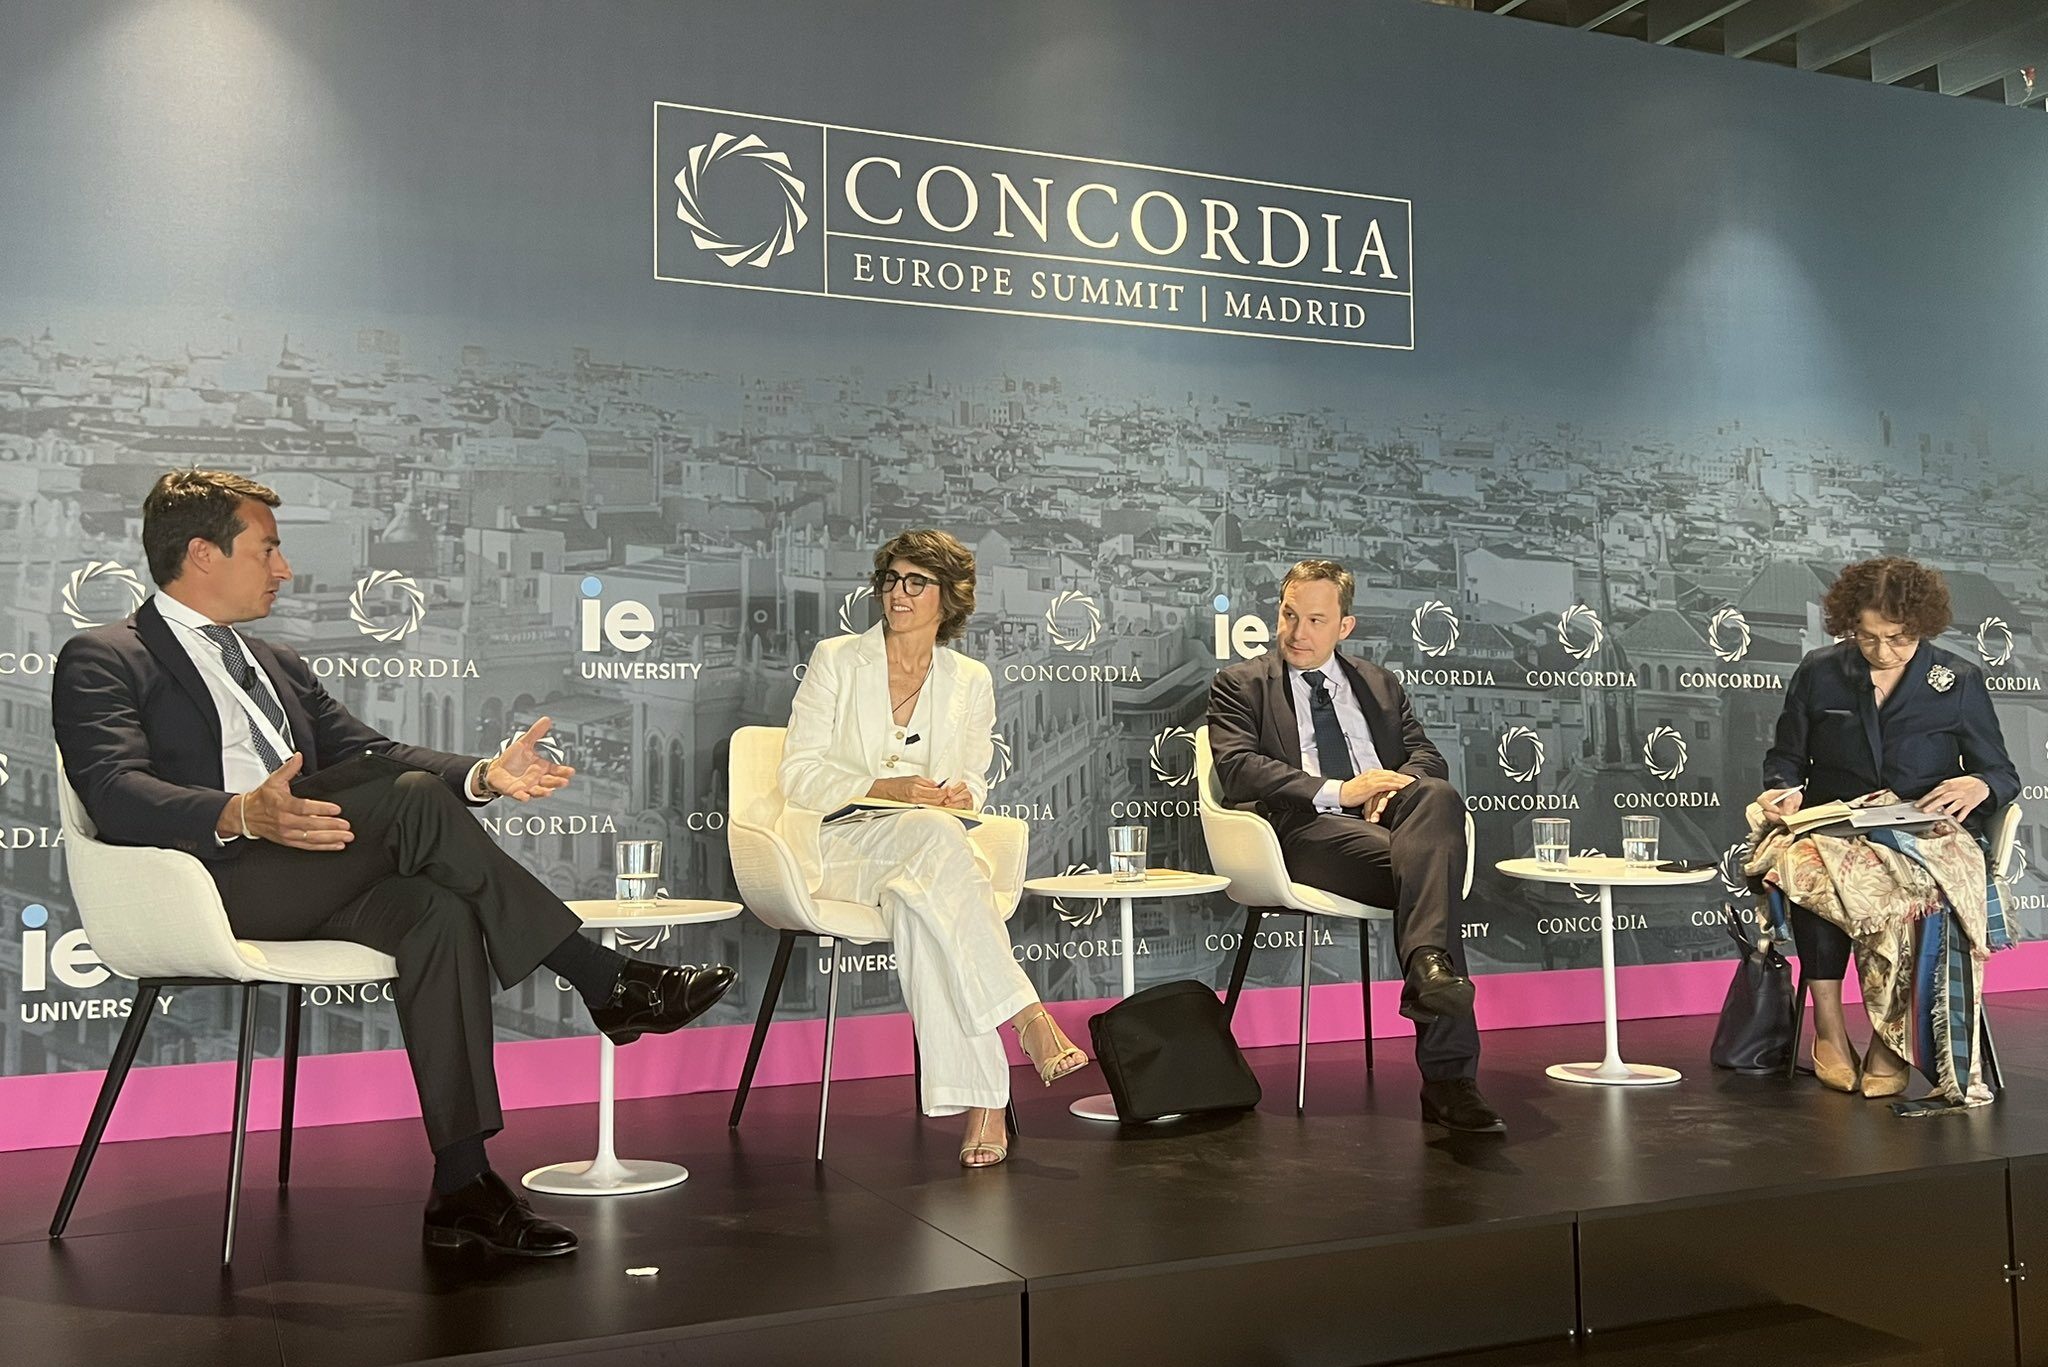 Concordia Summit: Notre board member Raphael Schoentgen évalue la transition énergétique en Europe